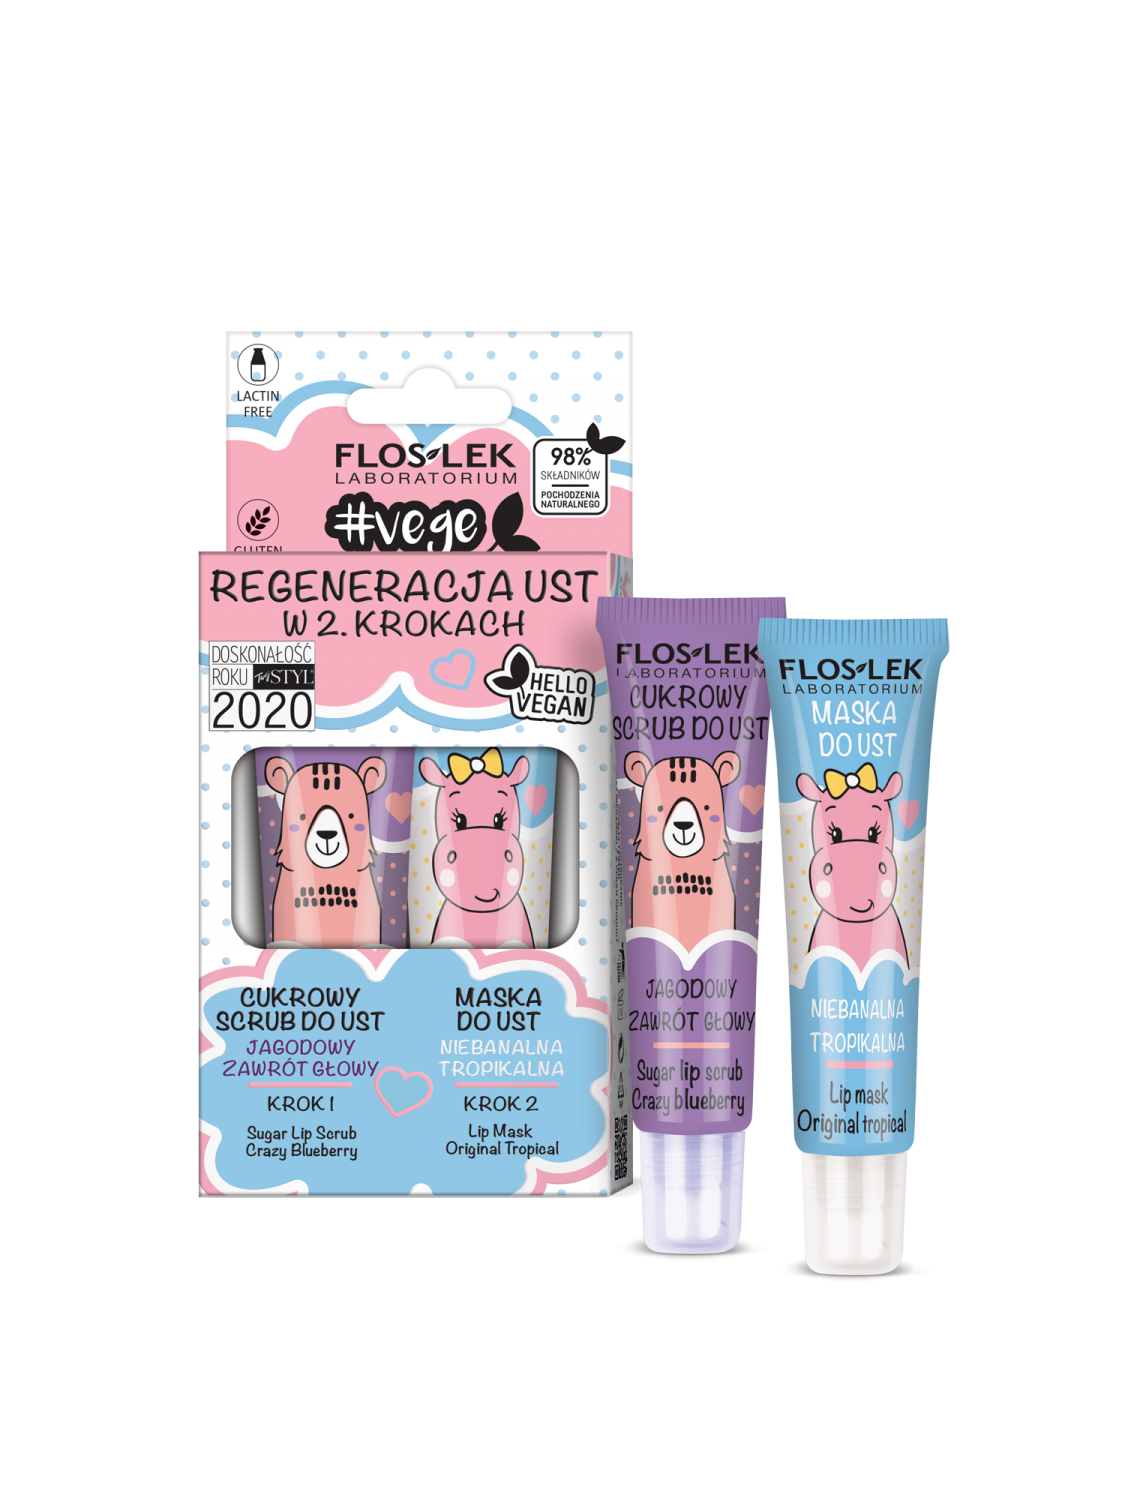 VEGE LIP CARE Lip regeneration in 2 steps (Sugar lip scrub Crazy blueberry + Lip mask Original tropical) - Floslek